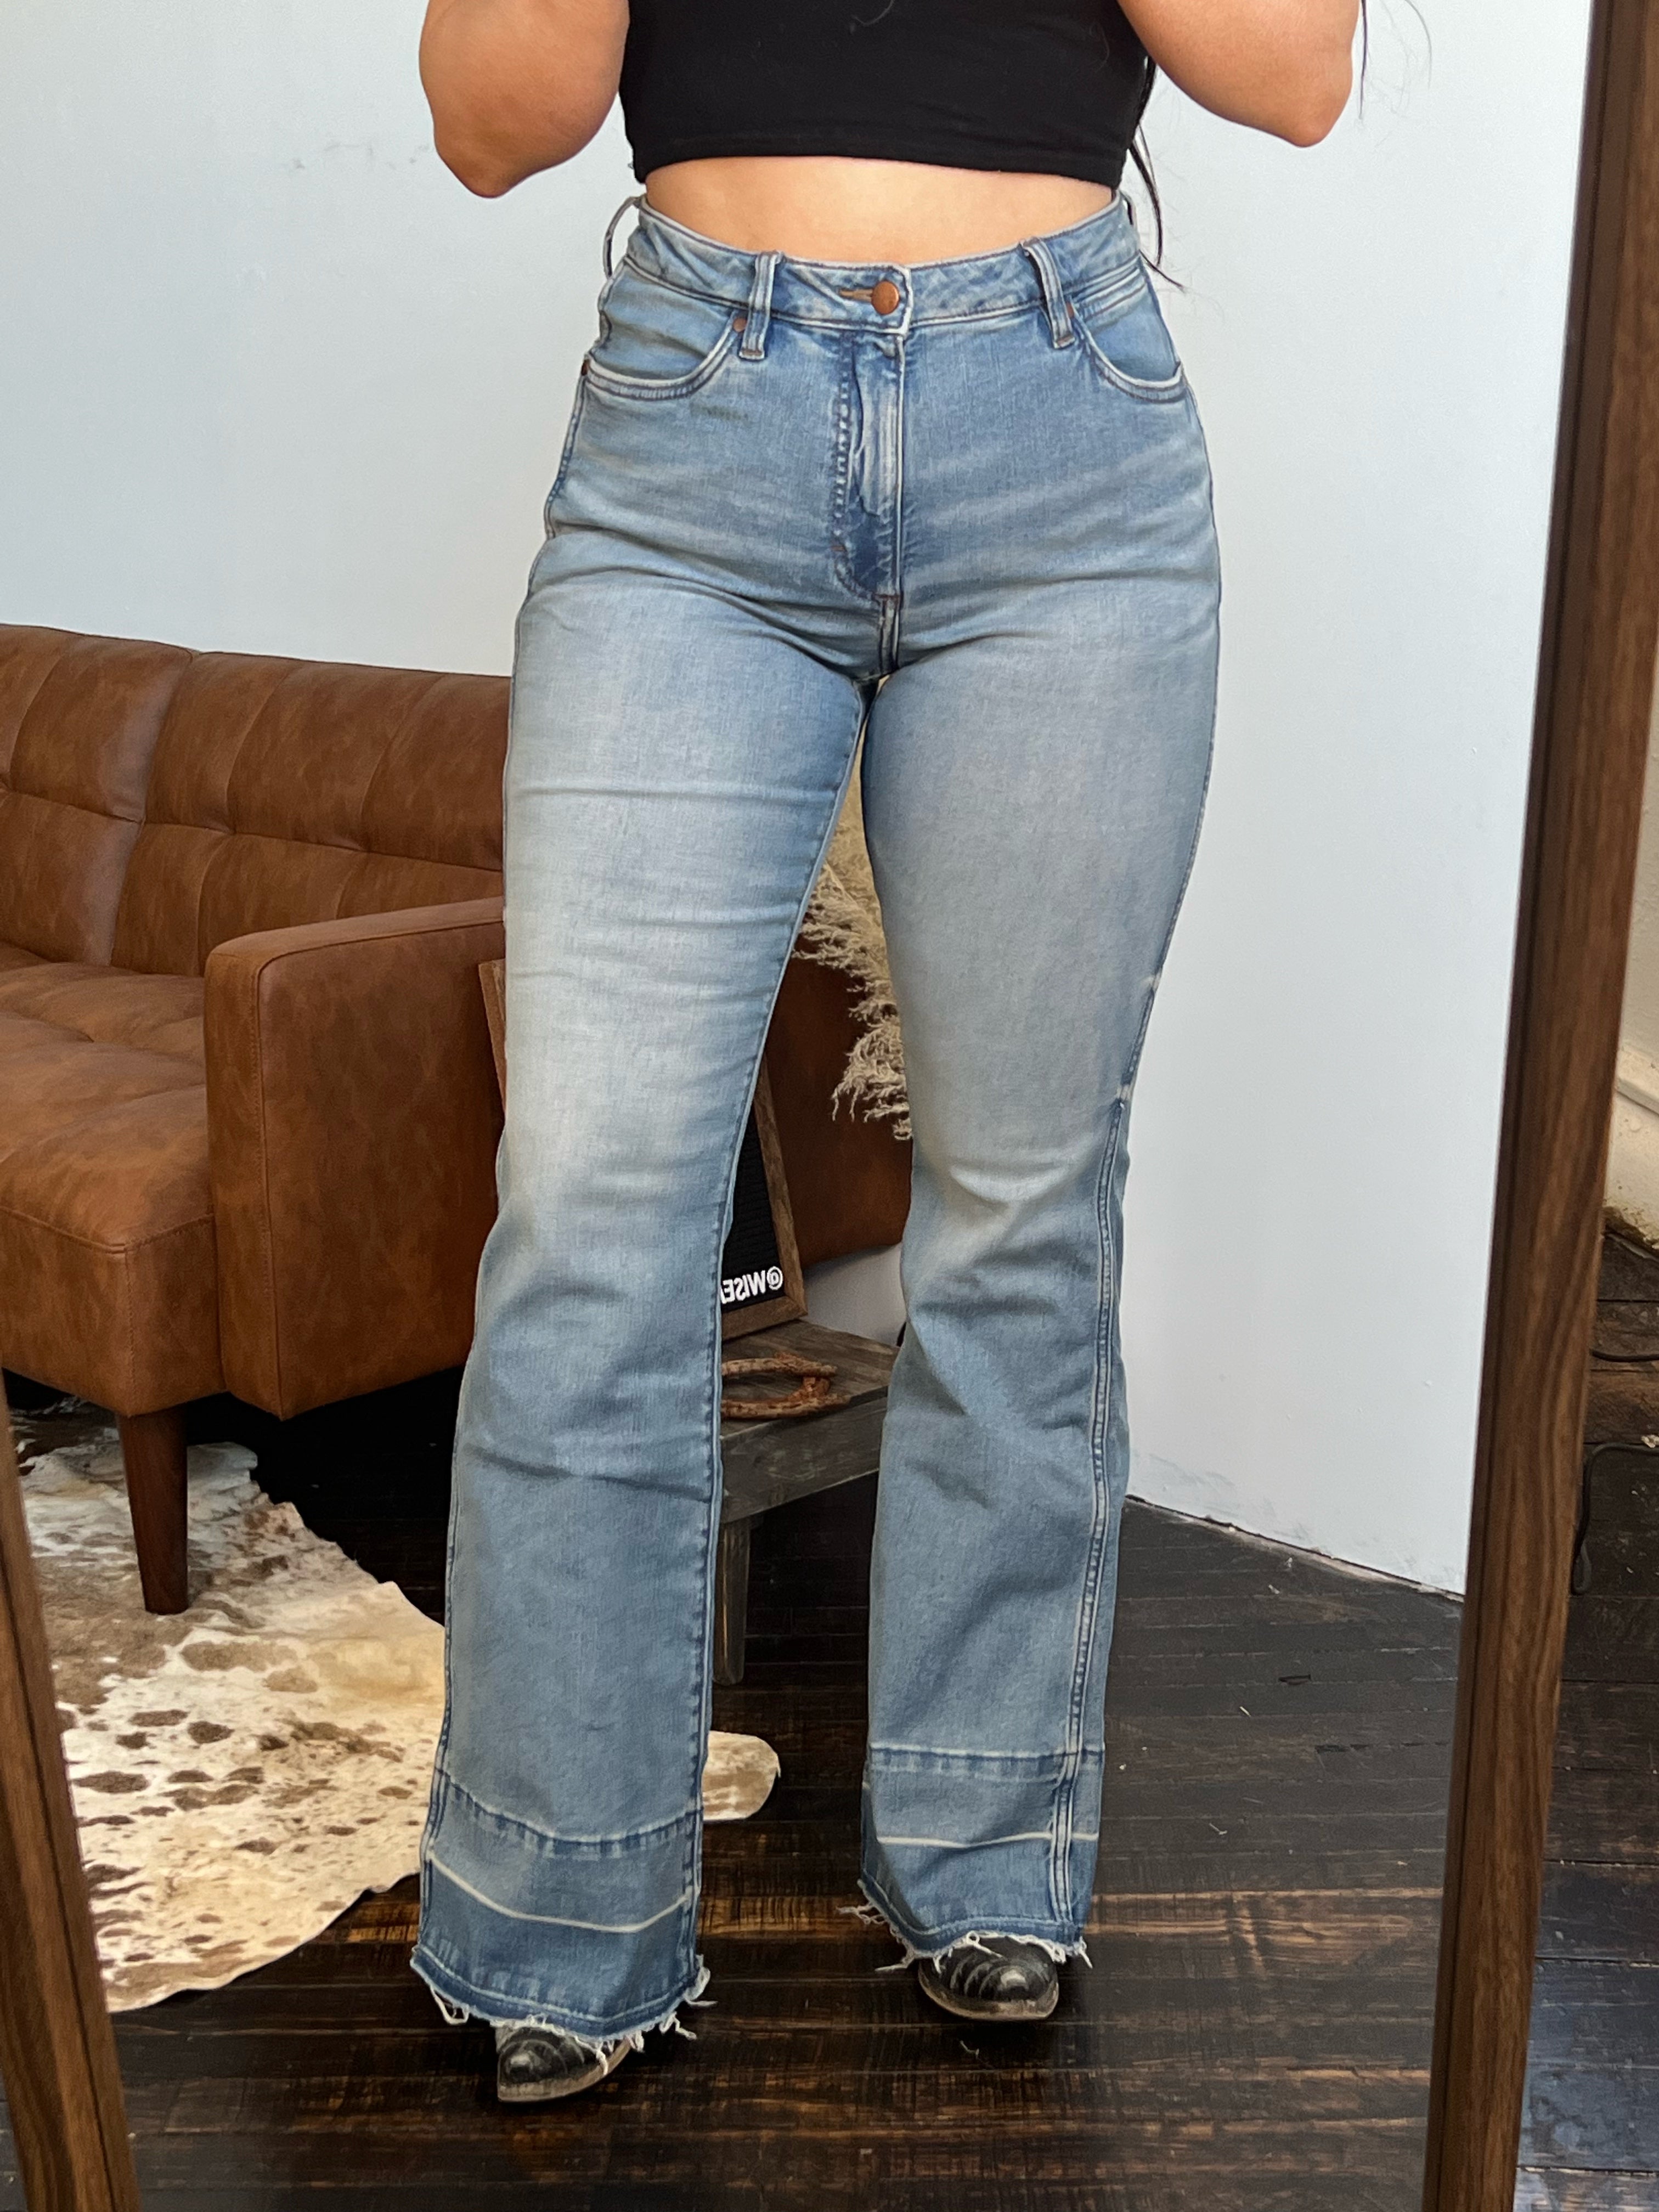 Wrangler Jeans Cargo Vintage 100% Cotton Khaki Trousers (Size: 38 x 32)  70BRWAO | eBay